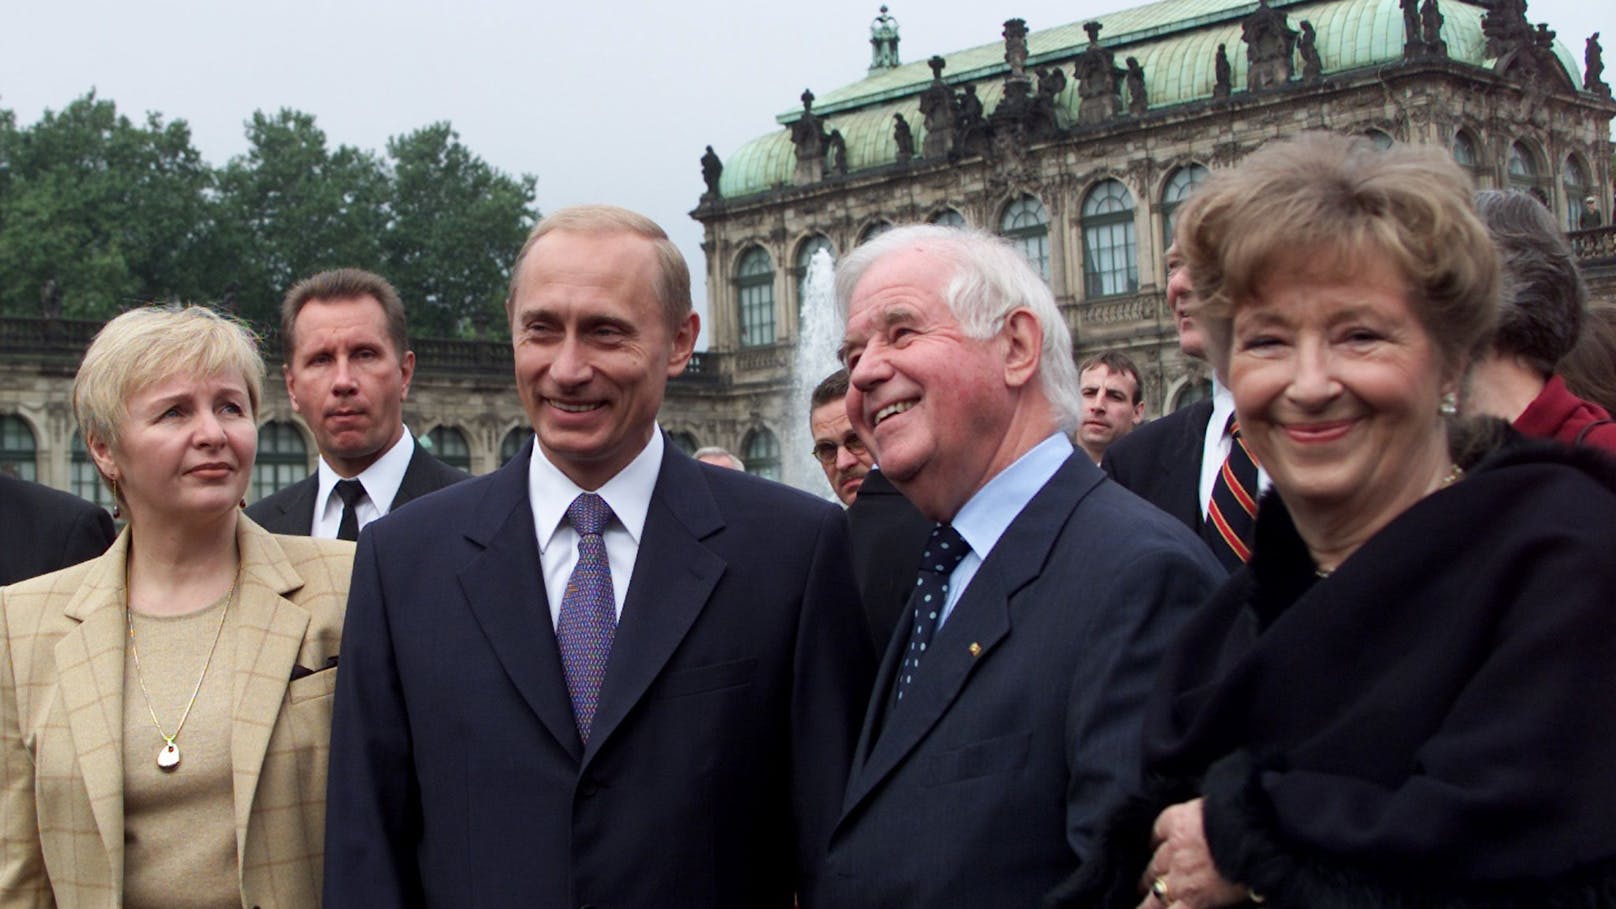 Von 1985 bis 1990 lebte das Paar in Dresden, wo Putin für die DDR tätig war. Hier sind die Putins 2001 bei einer gemeinsamen Stadttour mit dem sächsischen Ministerpräsidenten Kurt Biedendorf zu sehen.